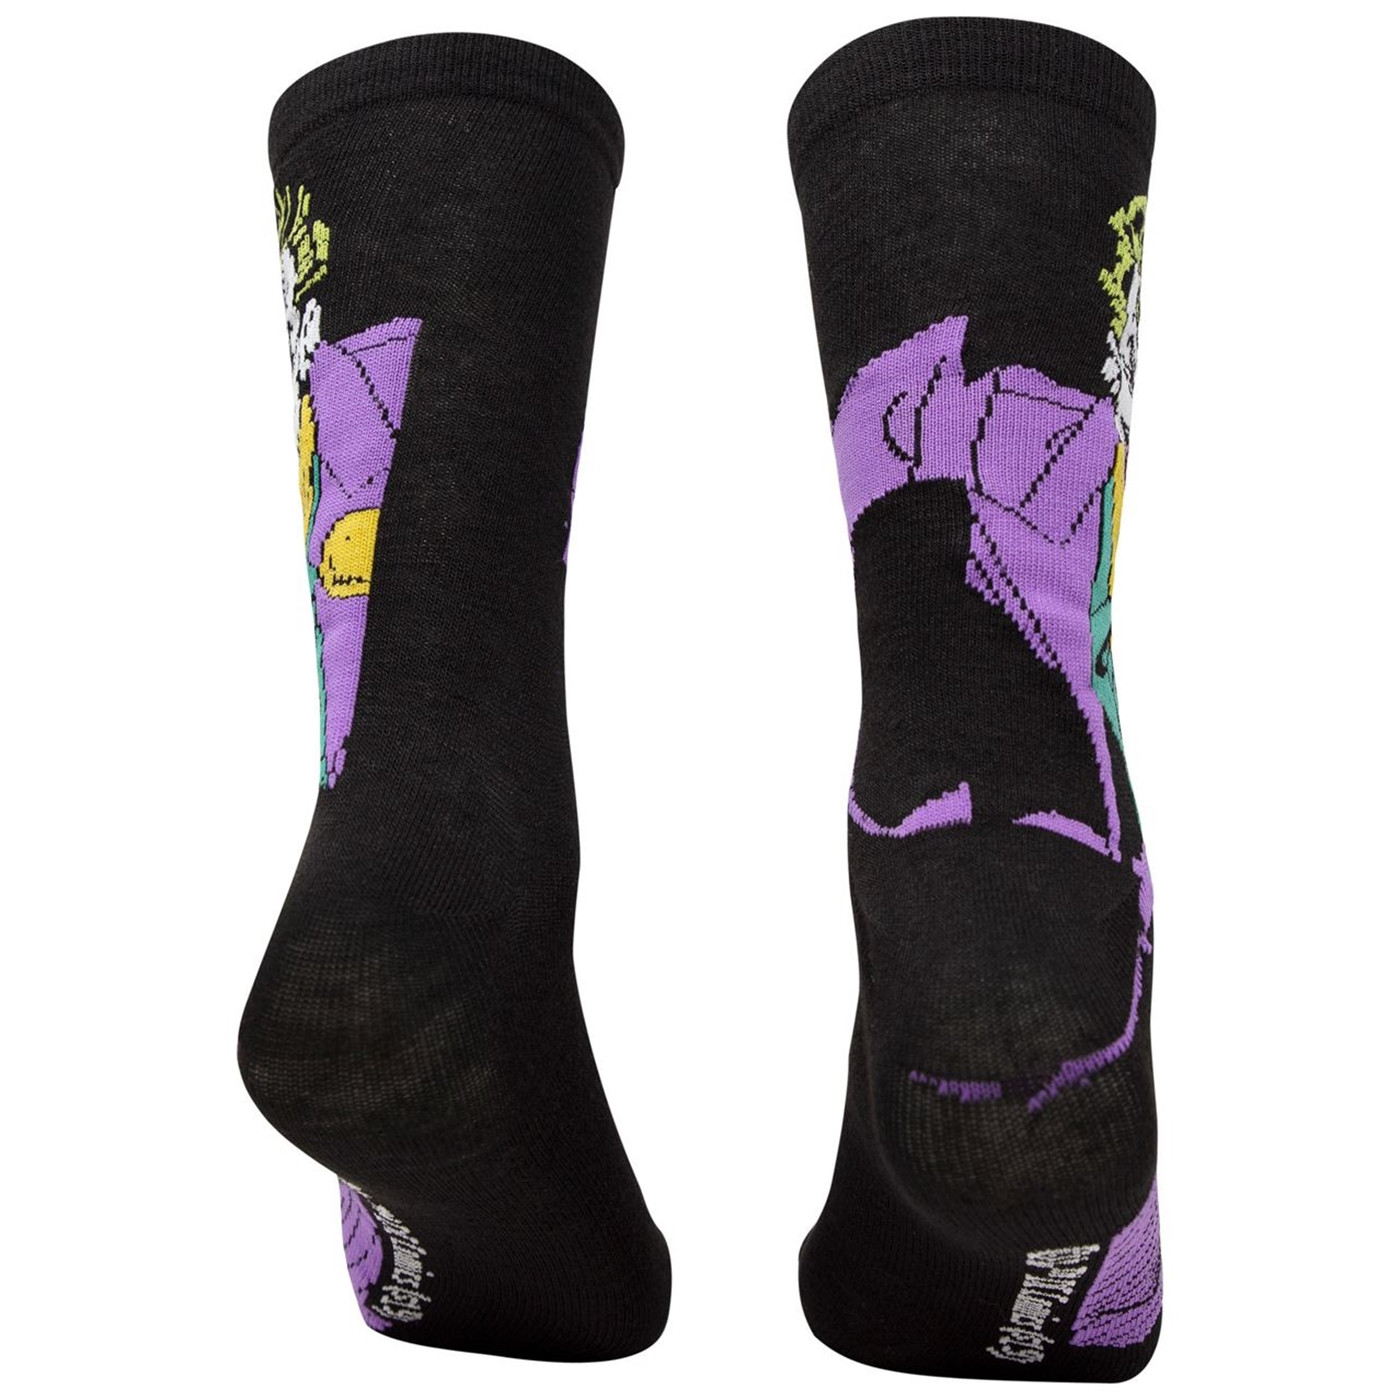 Joker Character and J Logo Men's 2-Pack Crew Socks